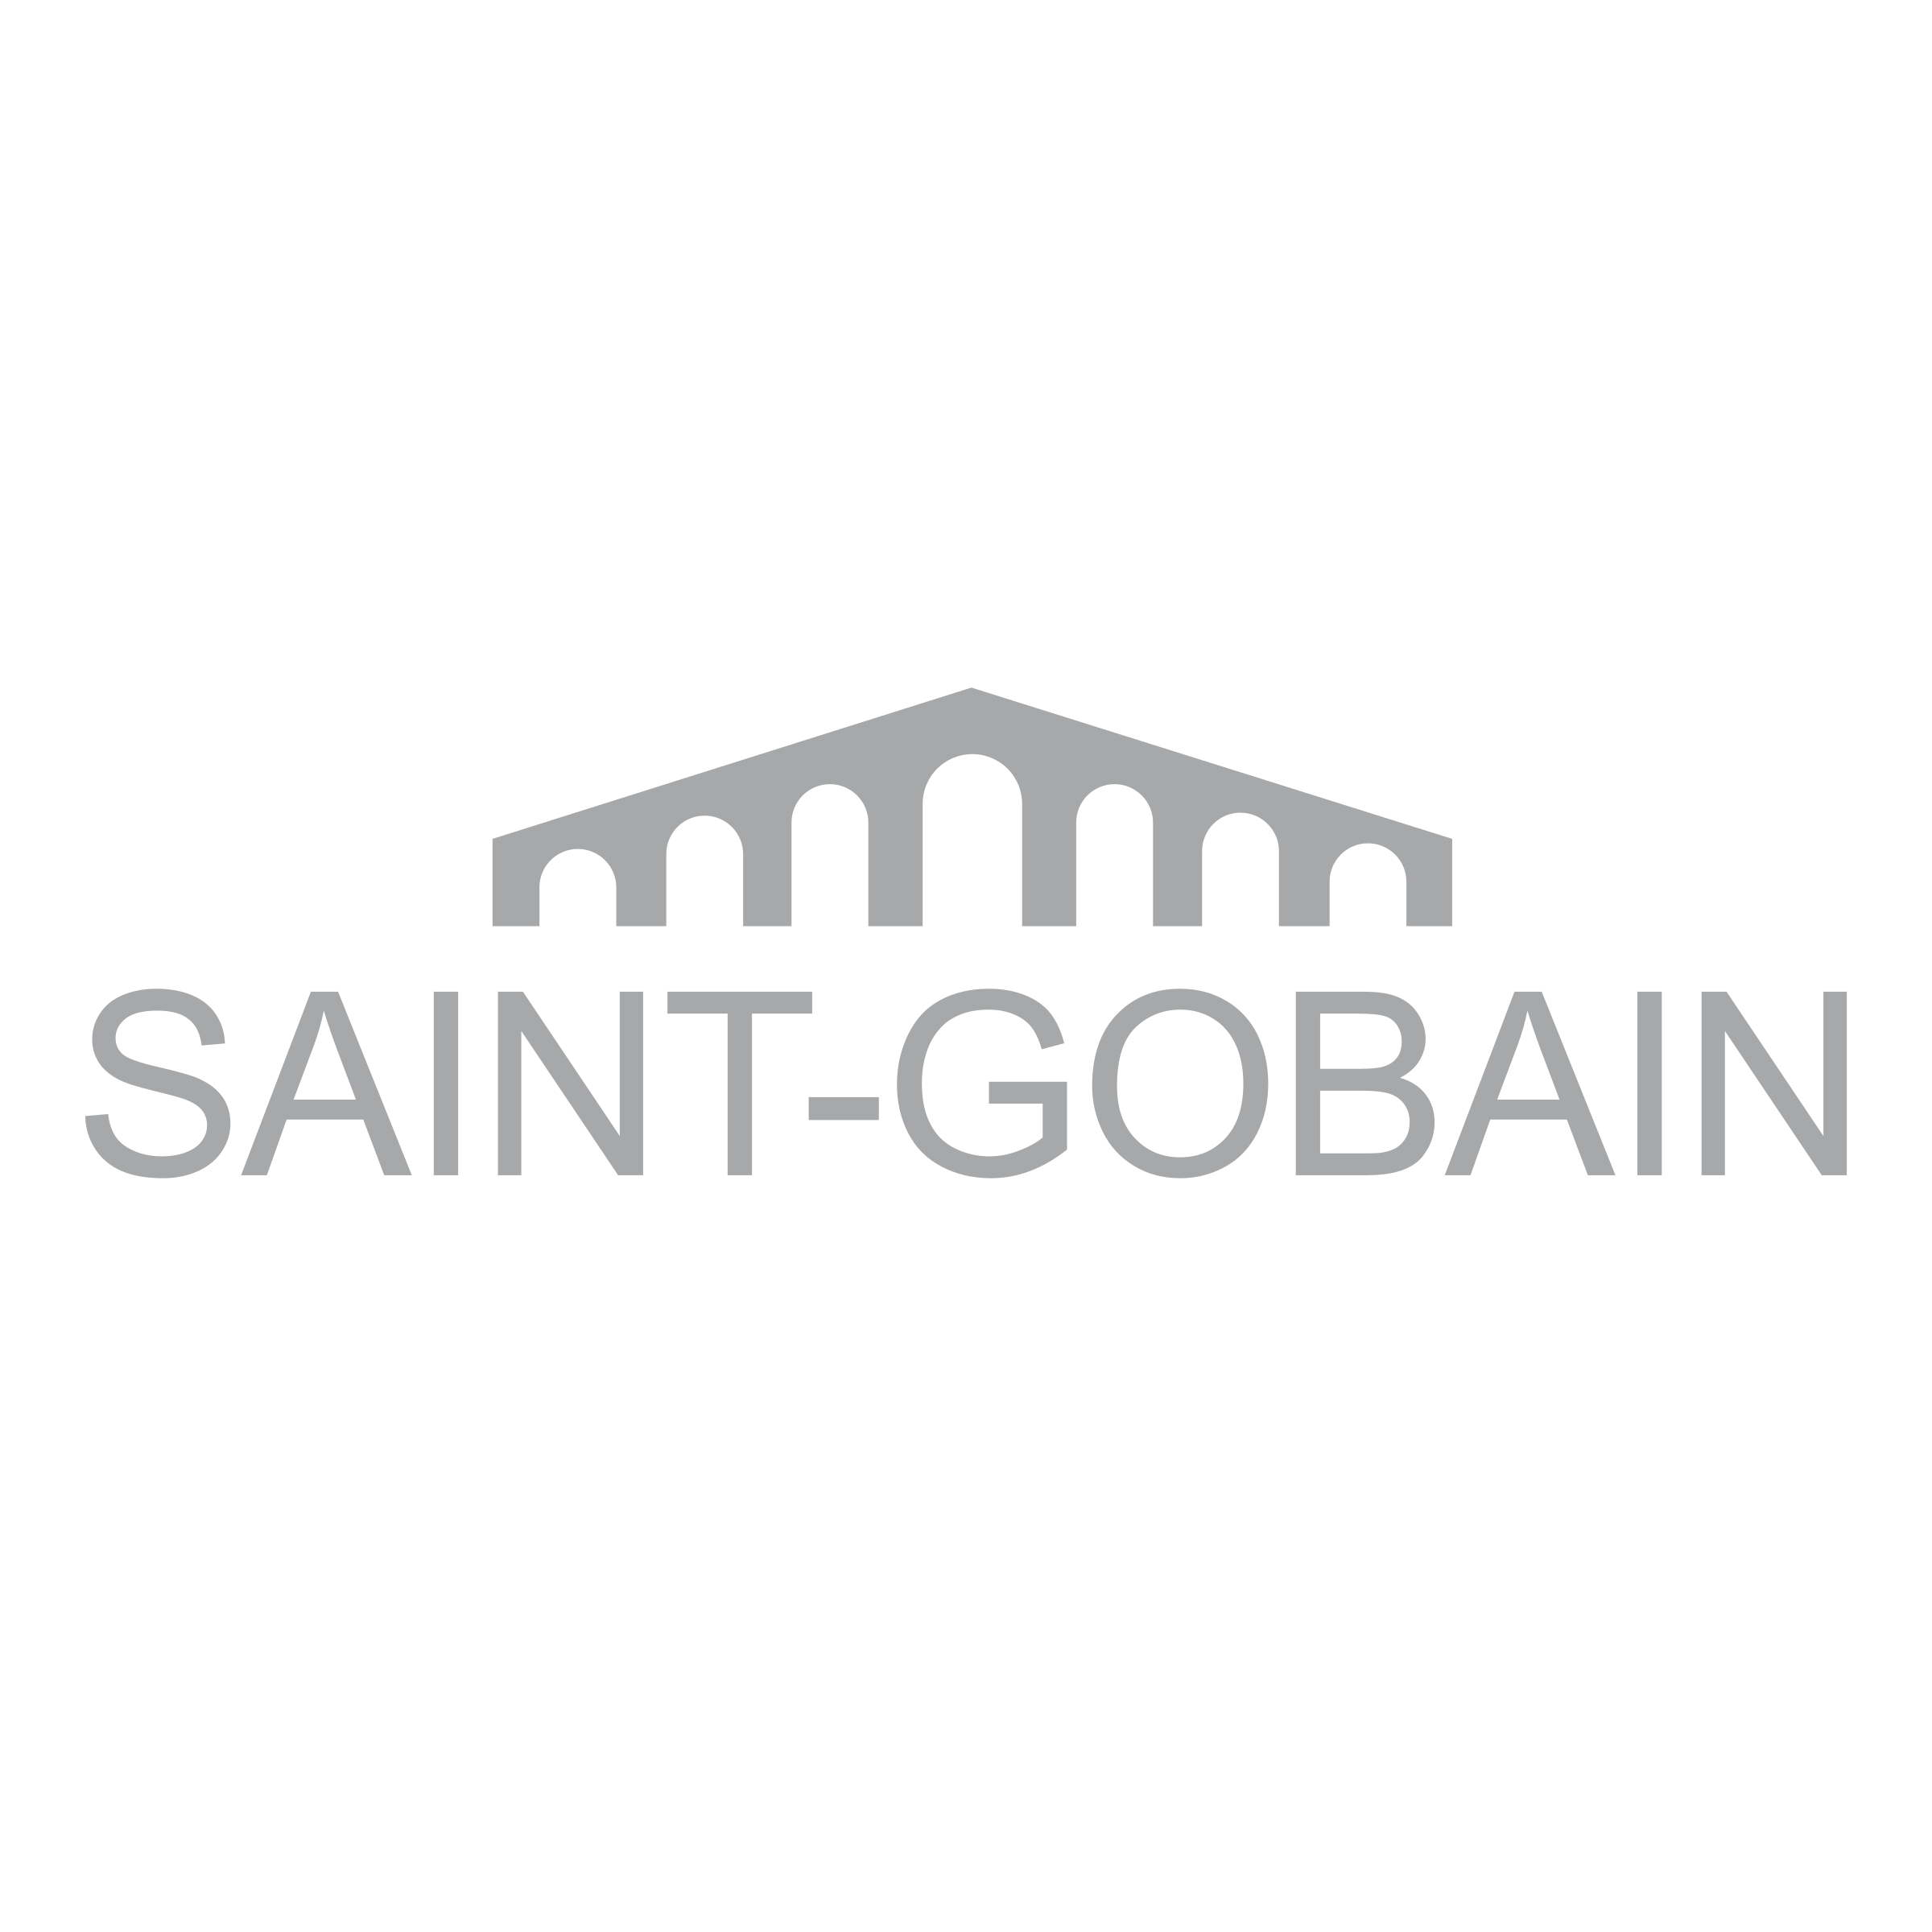 Saint-Gobain Logo - Saint Gobain Logo PNG Transparent & SVG Vector